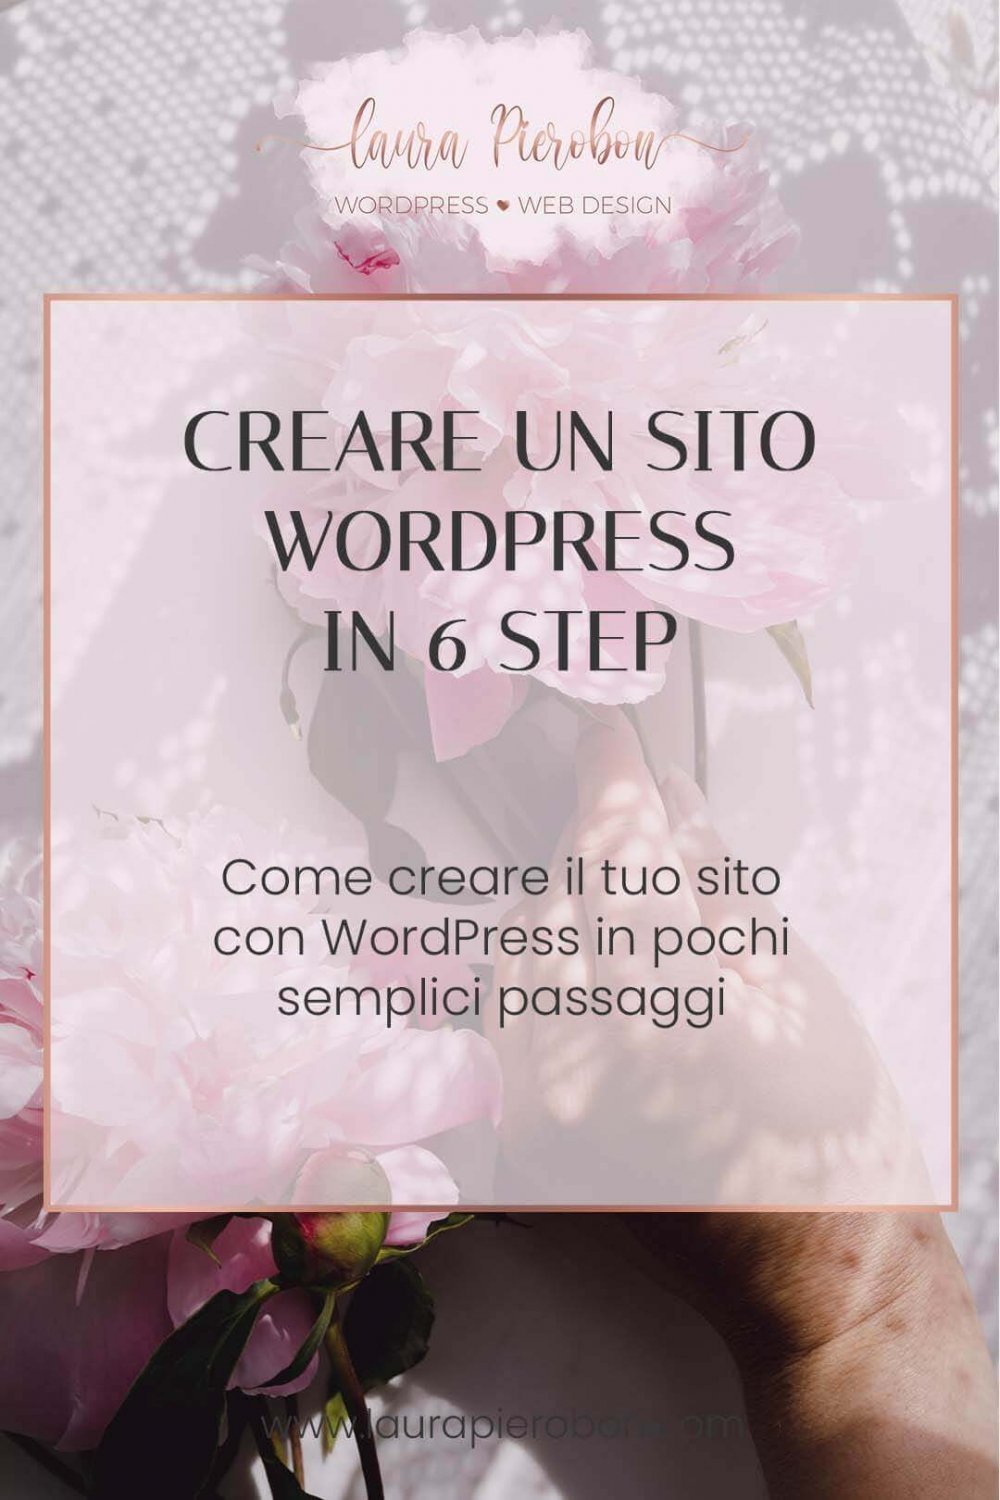 Come creare un sito WP in 6 semplici passaggi © Laura Pierobon - WordPress ❤︎ Web Design